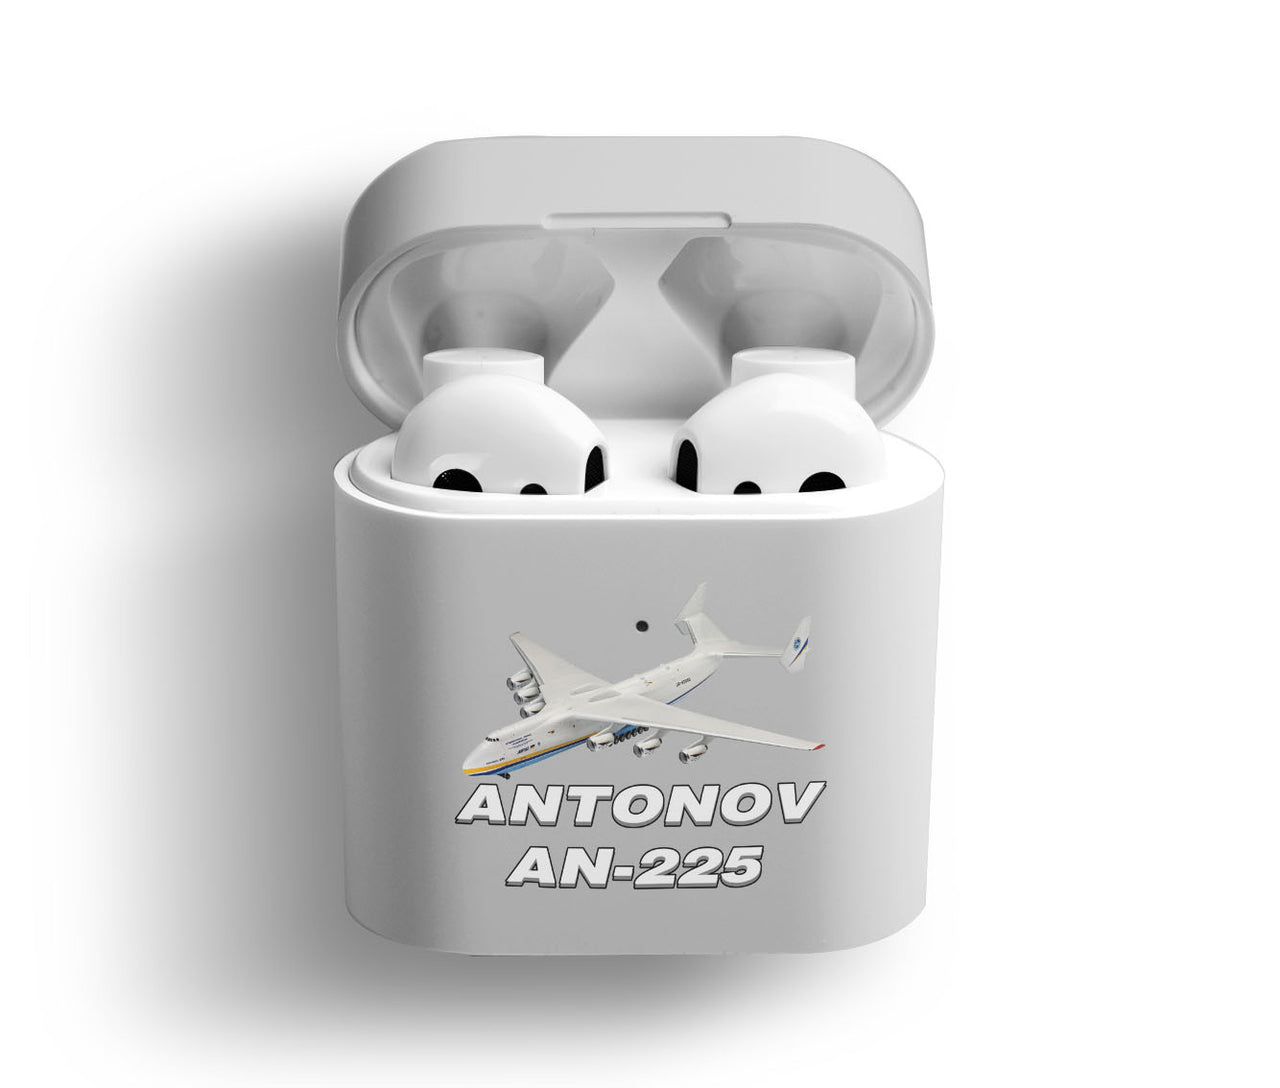 Antonov AN-225 (12) Designed AirPods  Cases